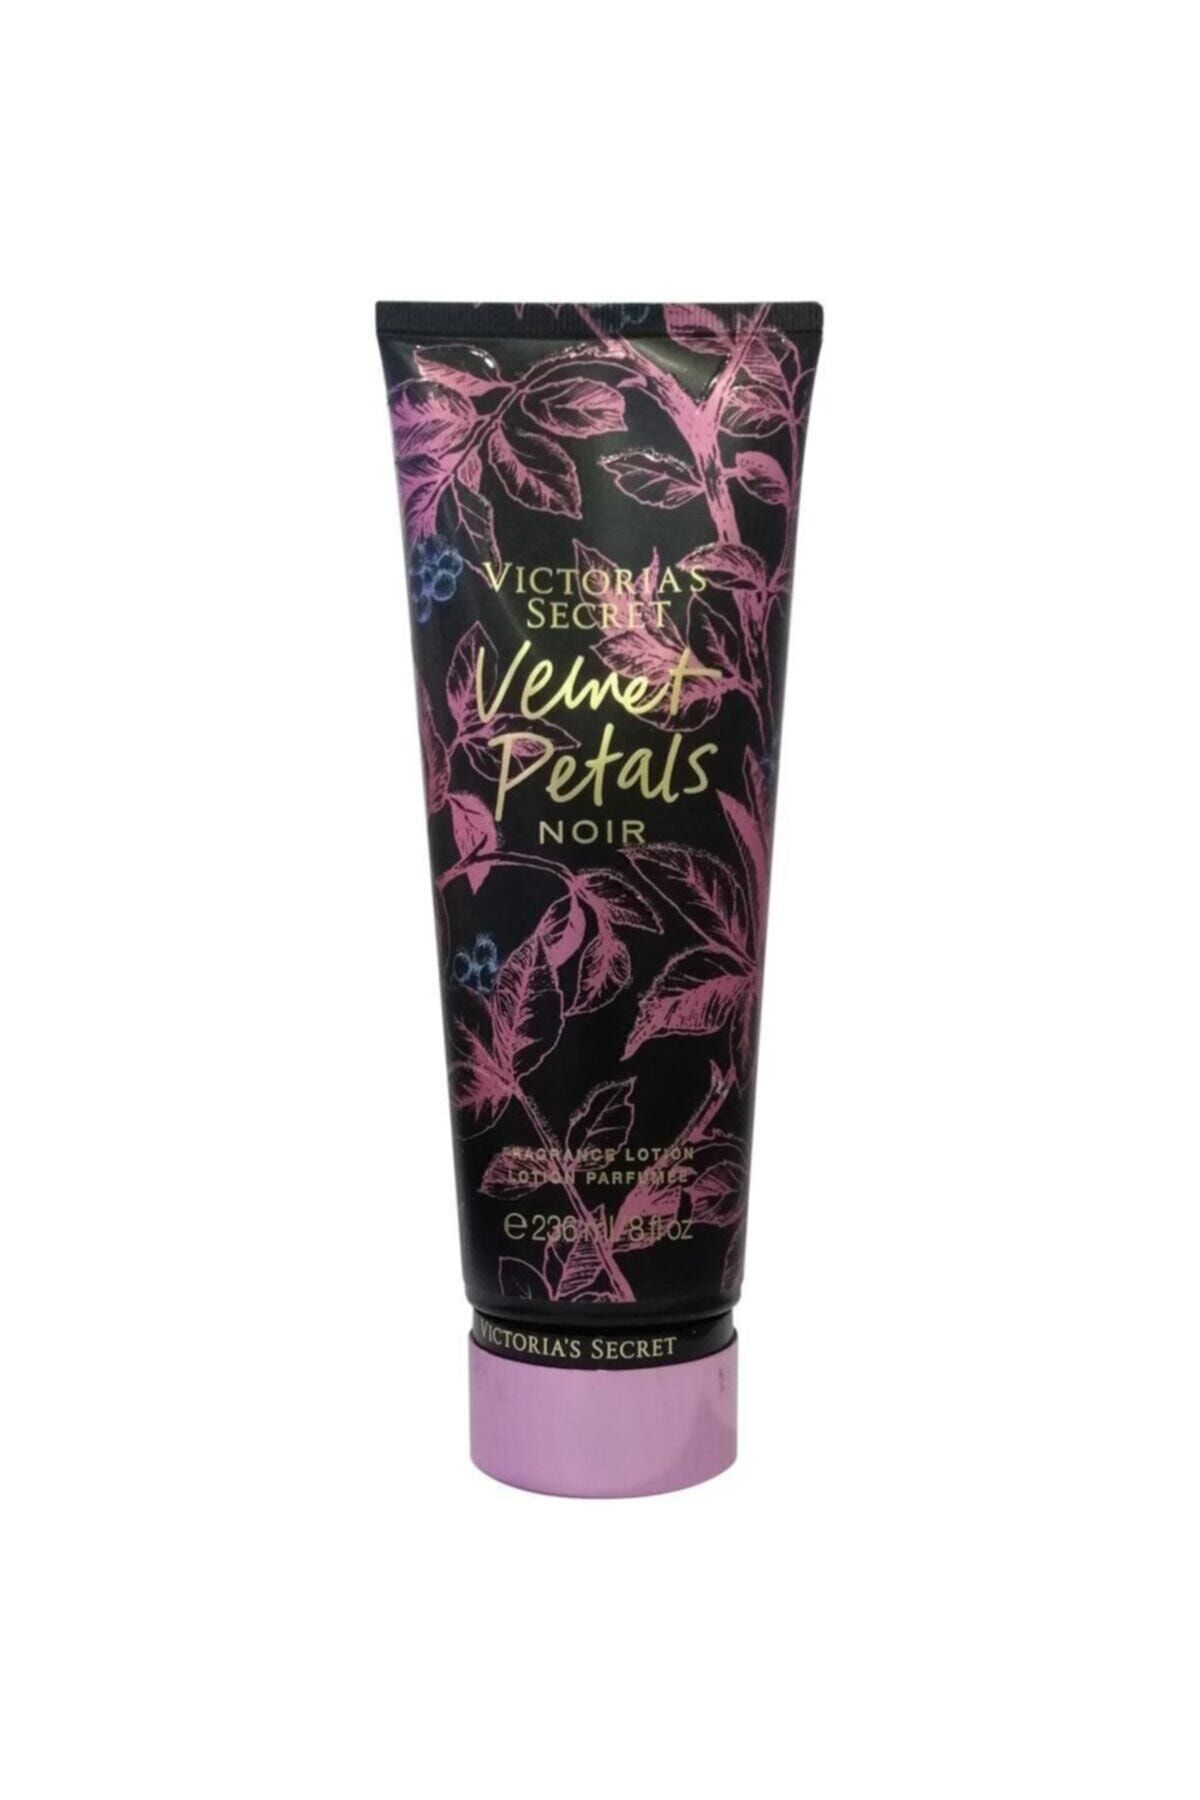 Victoria's Secret Velvet Petals Noir Fragrance Losyon 236ml